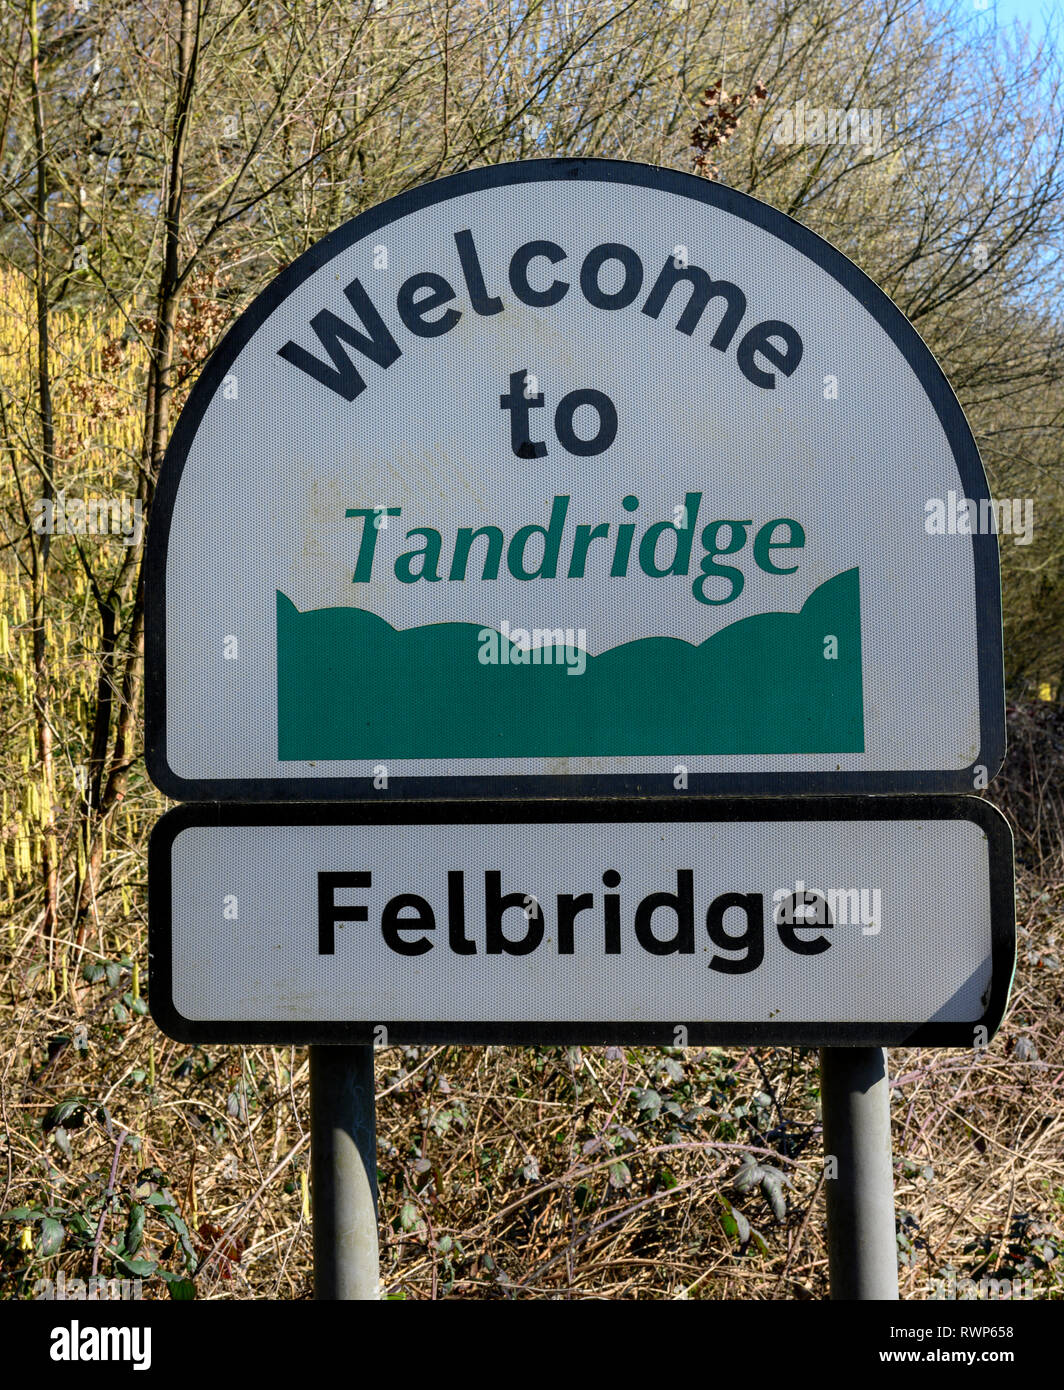 Bienvenue à Tandridge signer à la frontière du district d'administration locale Tandridge, Surrey, England, UK - également la frontière au village Felbridge. Banque D'Images